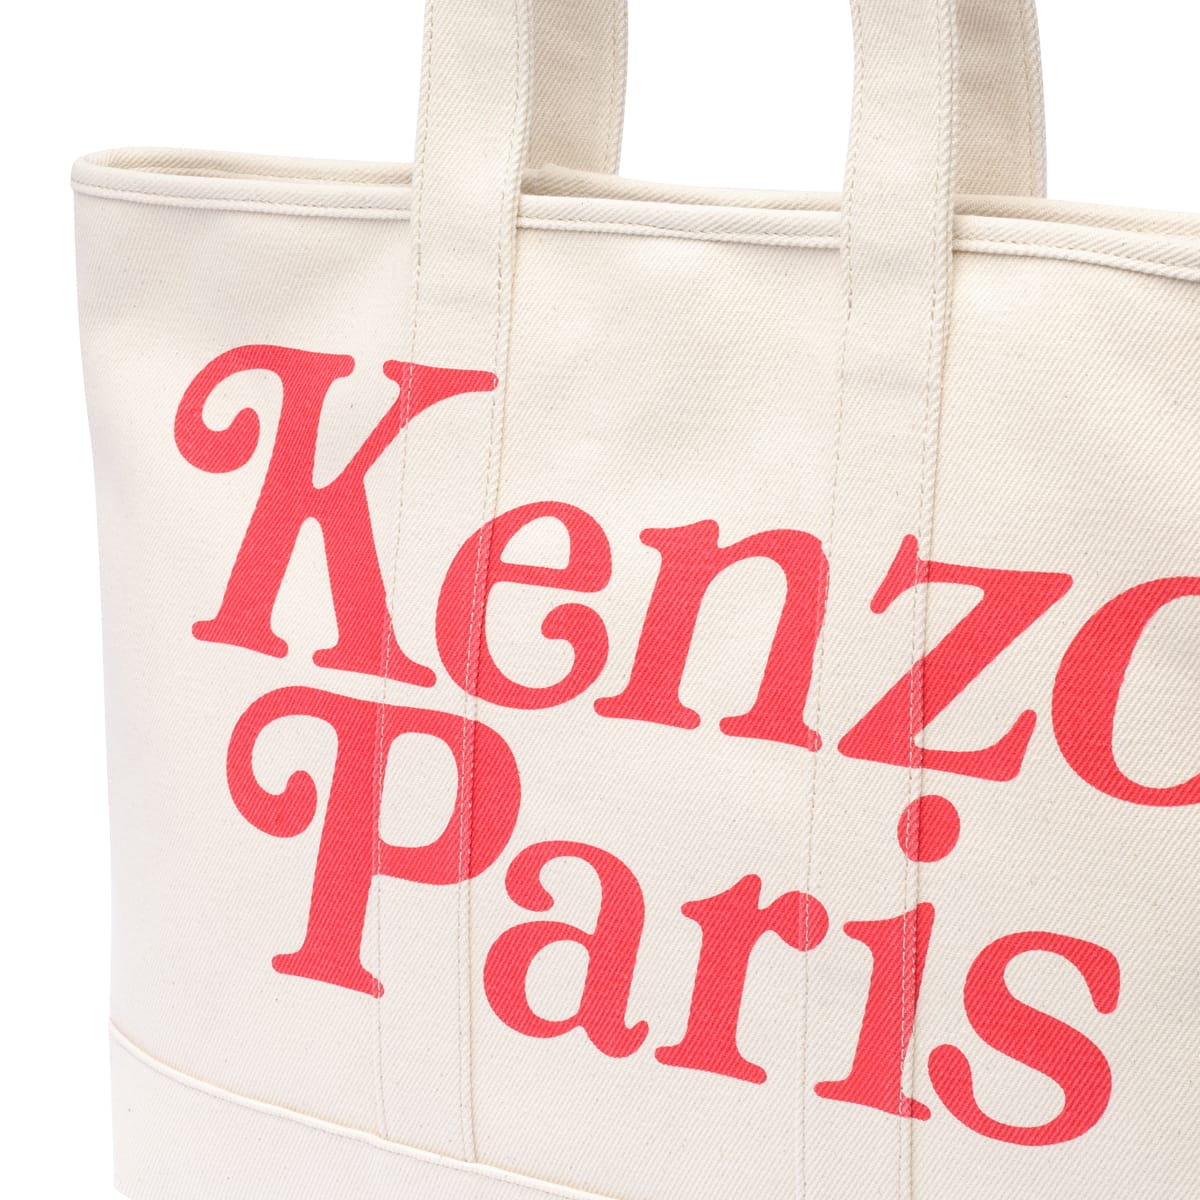 Shop Kenzo Paris Tote Bag In Ecru